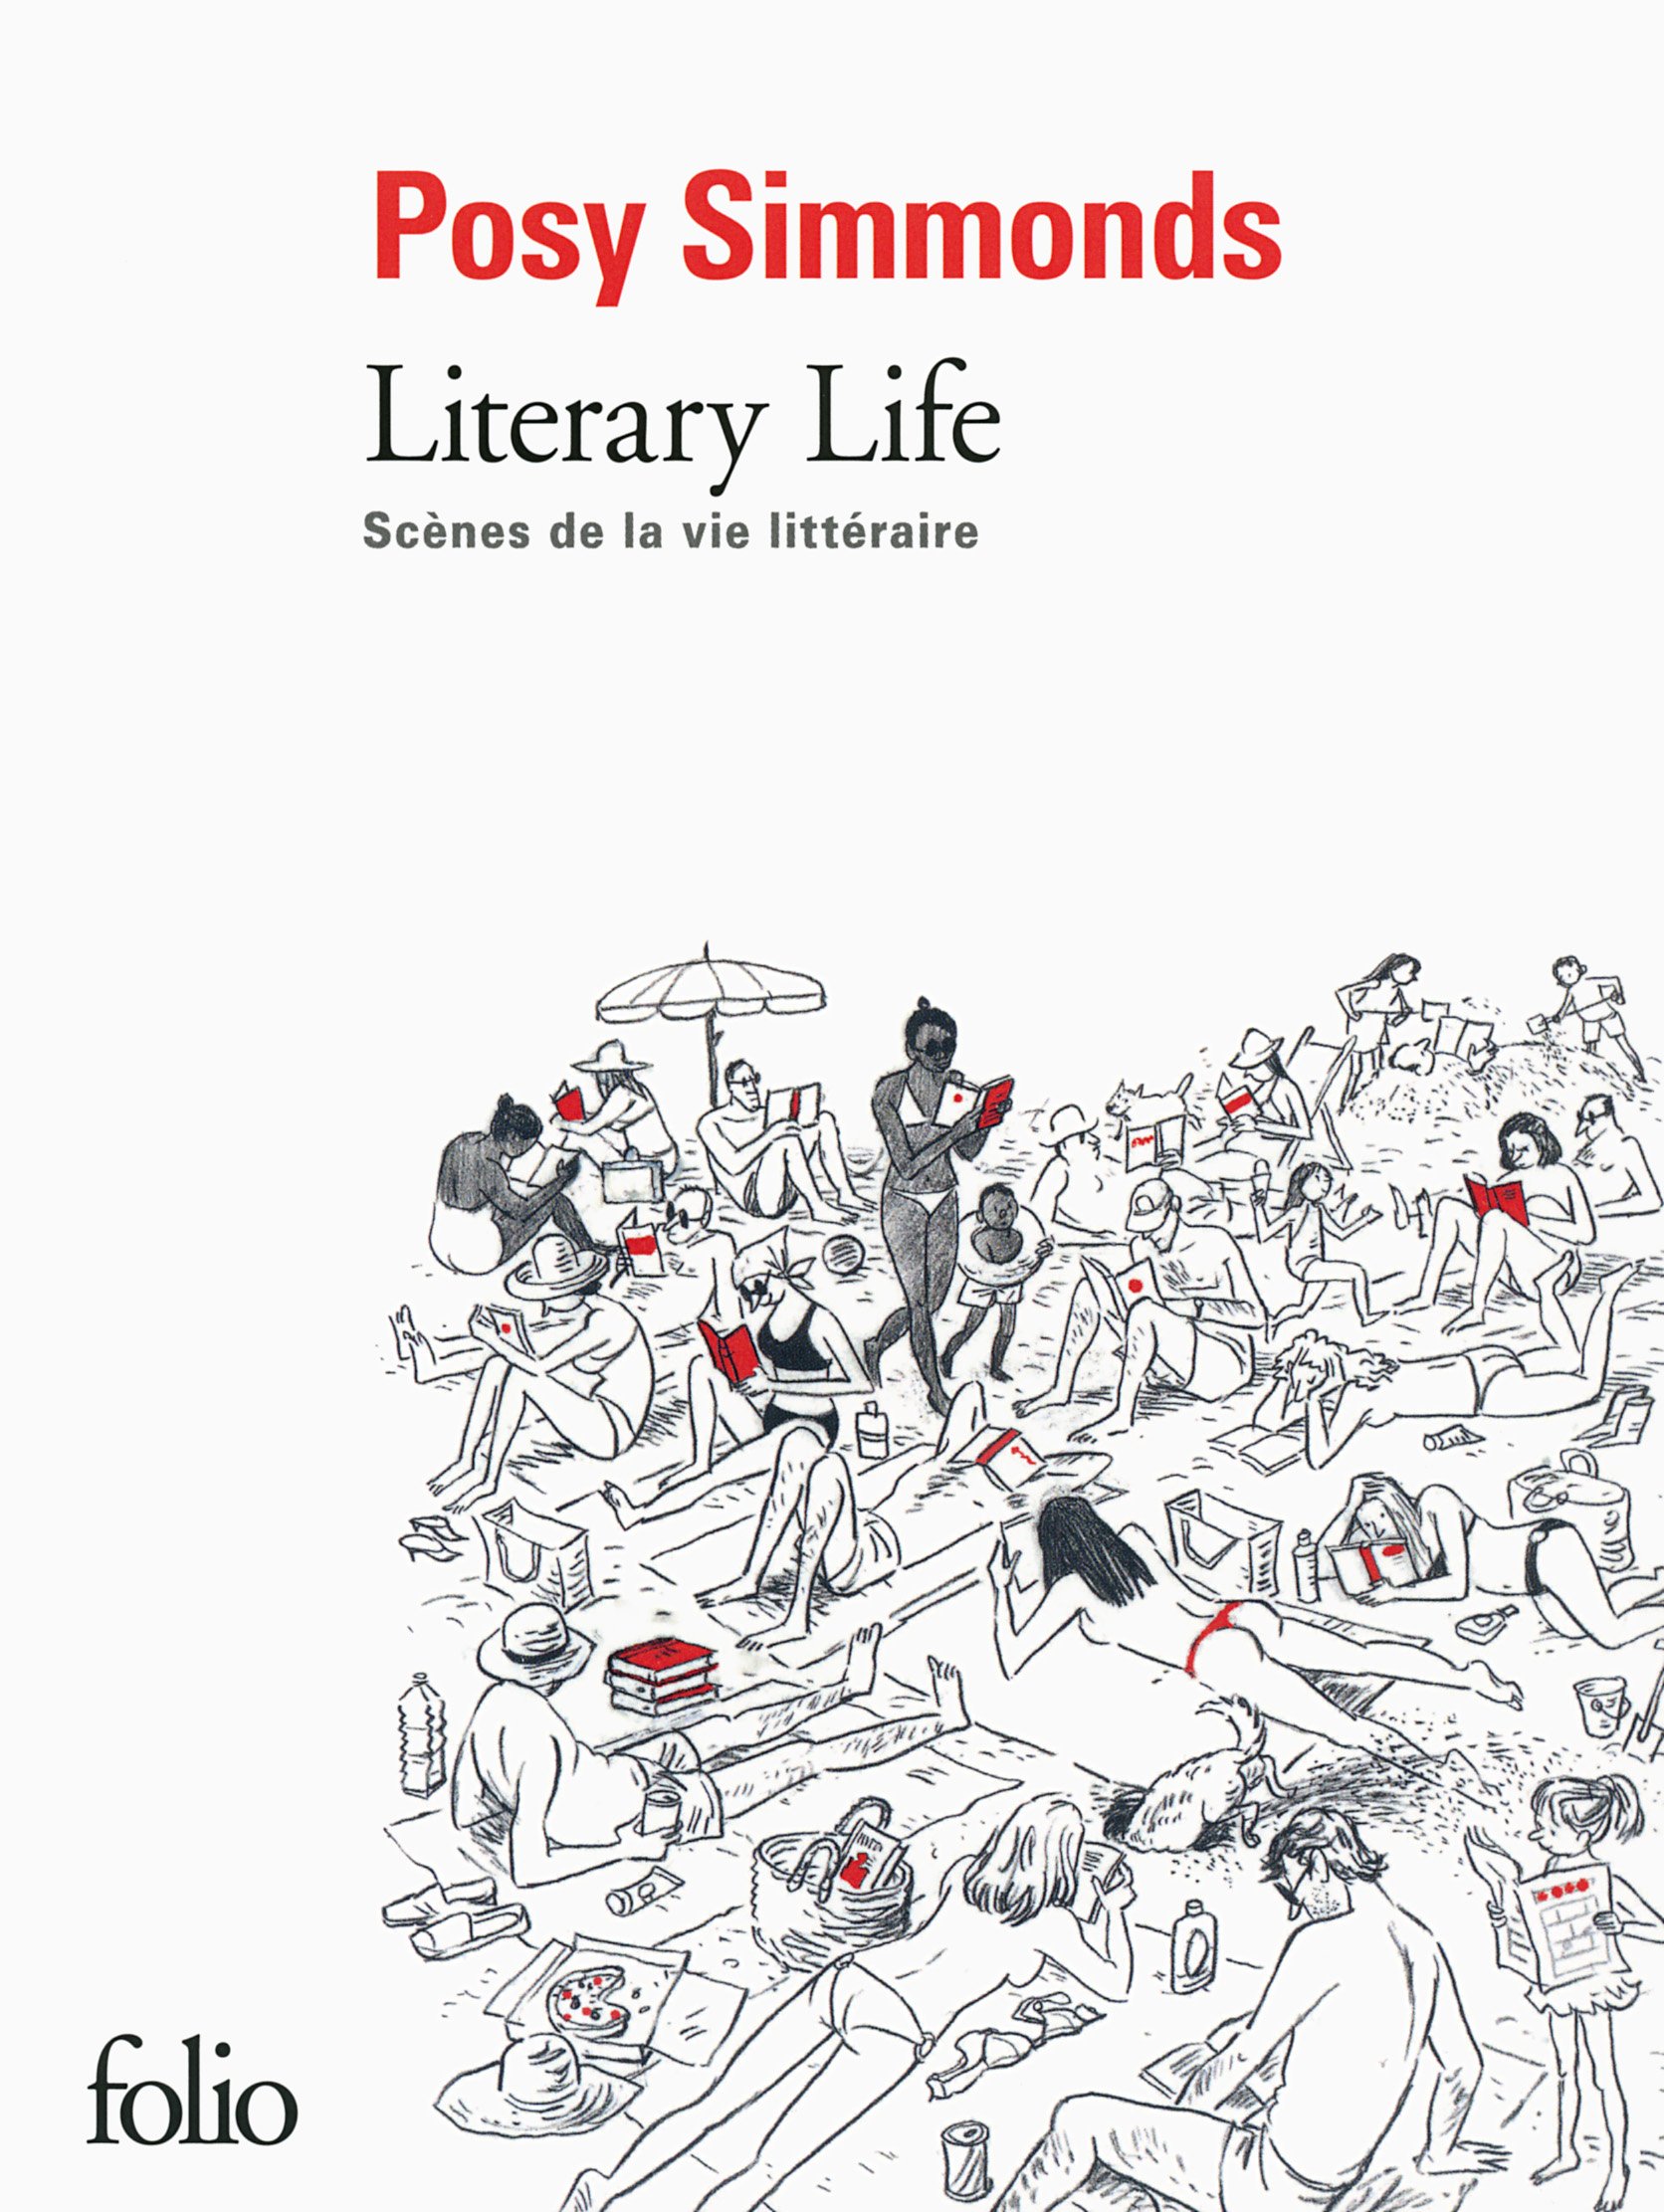 Literary life: Scenes de la vie litteraire | Posy Simmonds